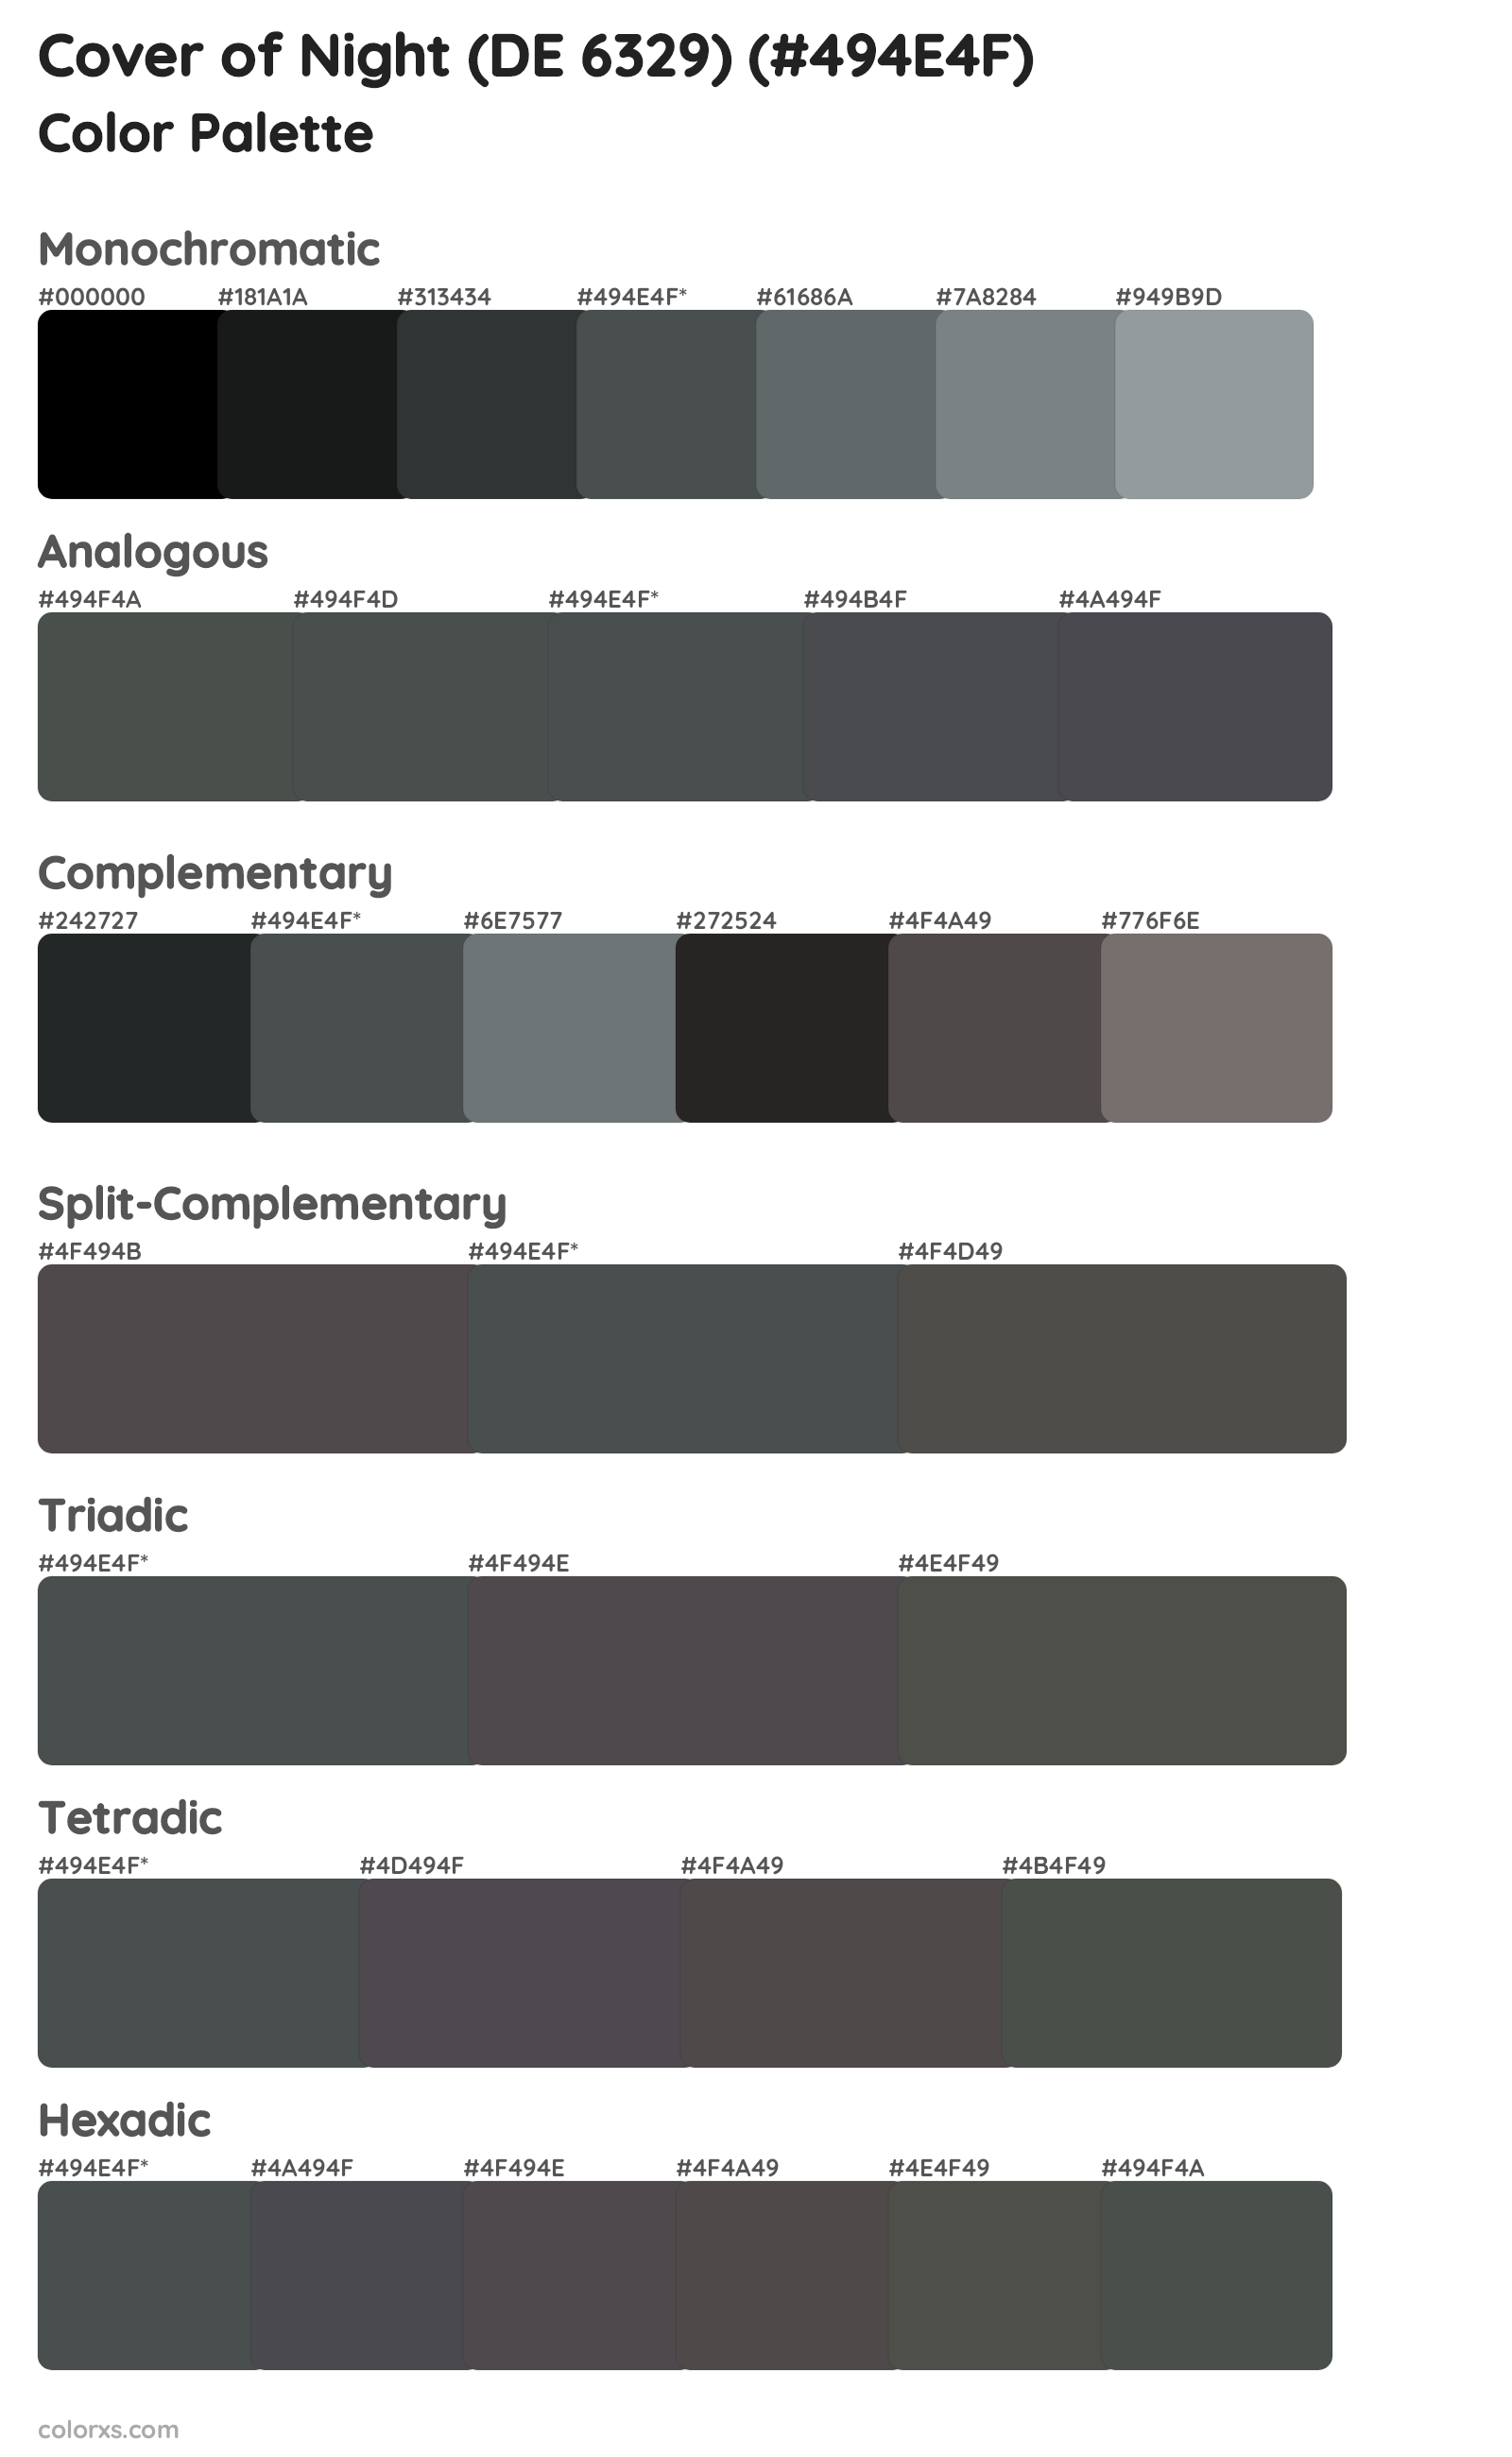 Cover of Night (DE 6329) Color Scheme Palettes